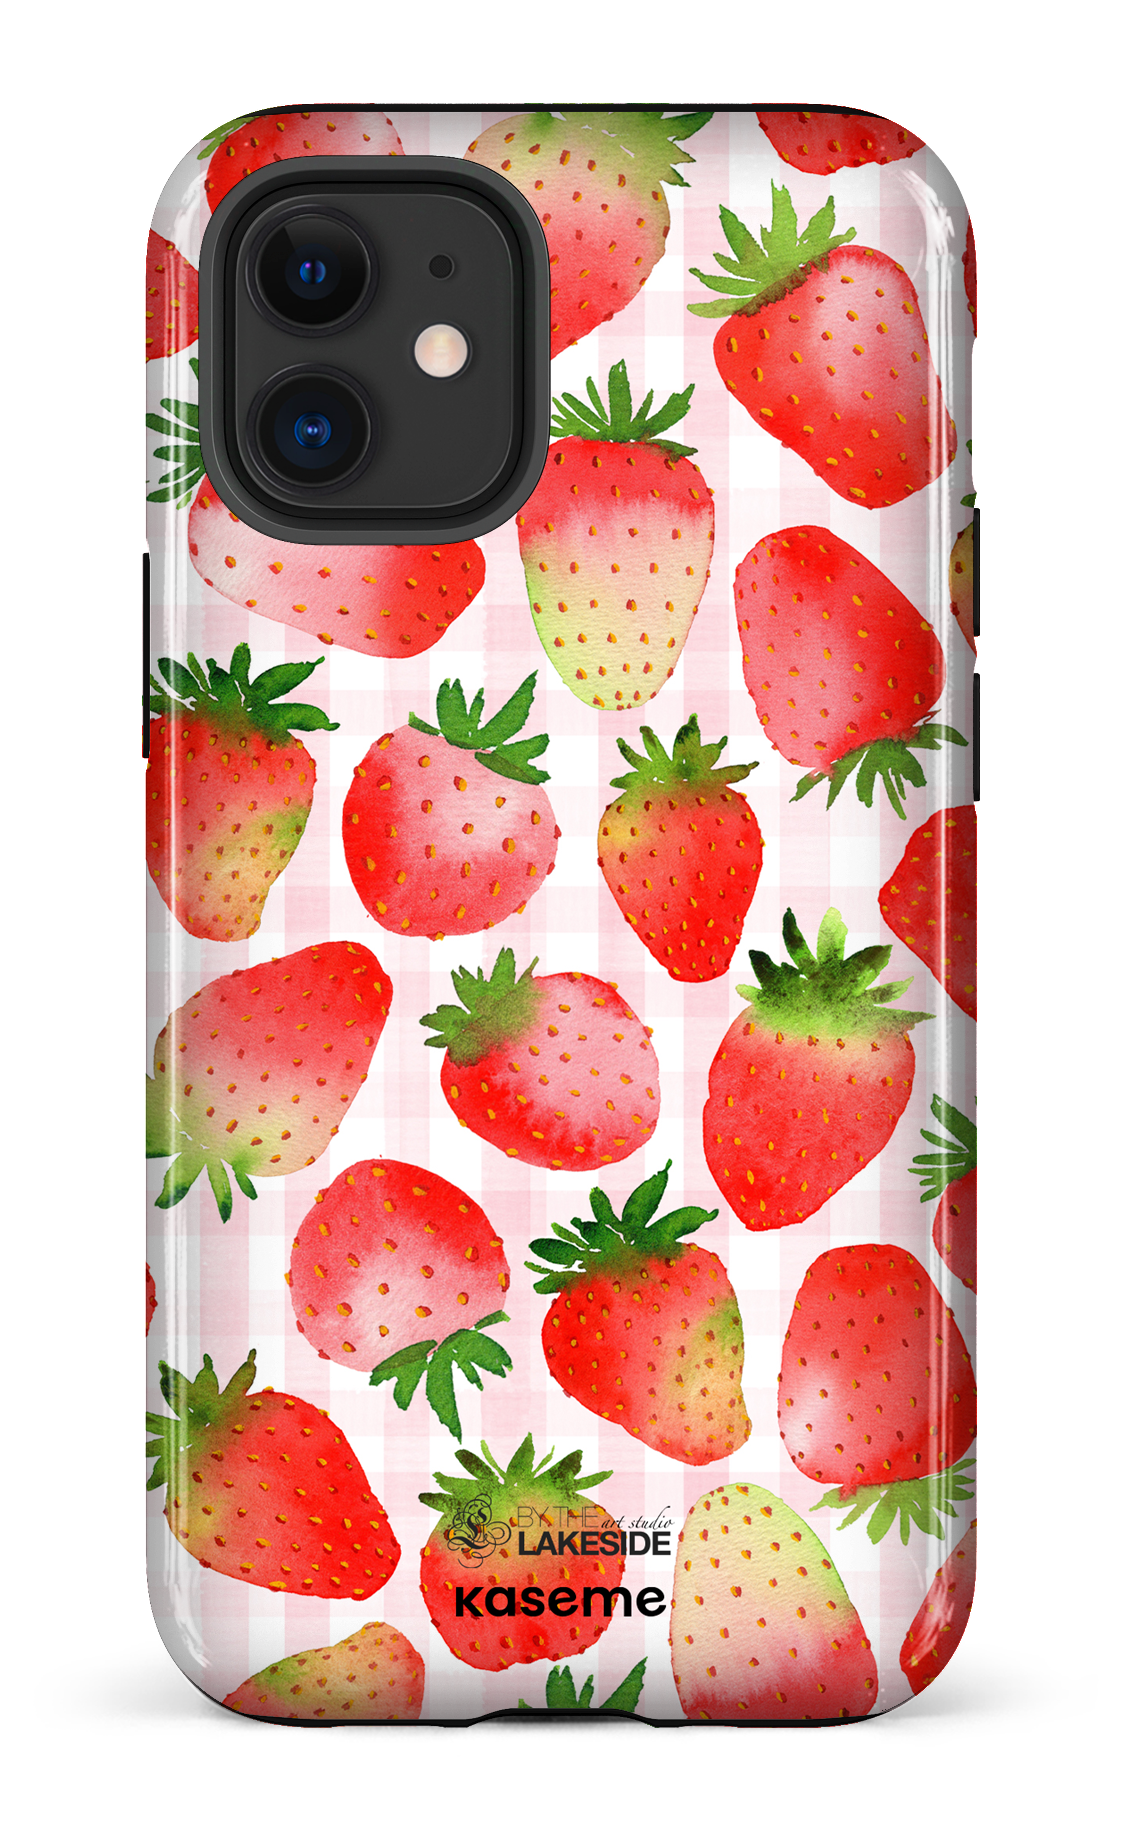 Strawberry Fields by Pooja Umrani - iPhone 12 Mini